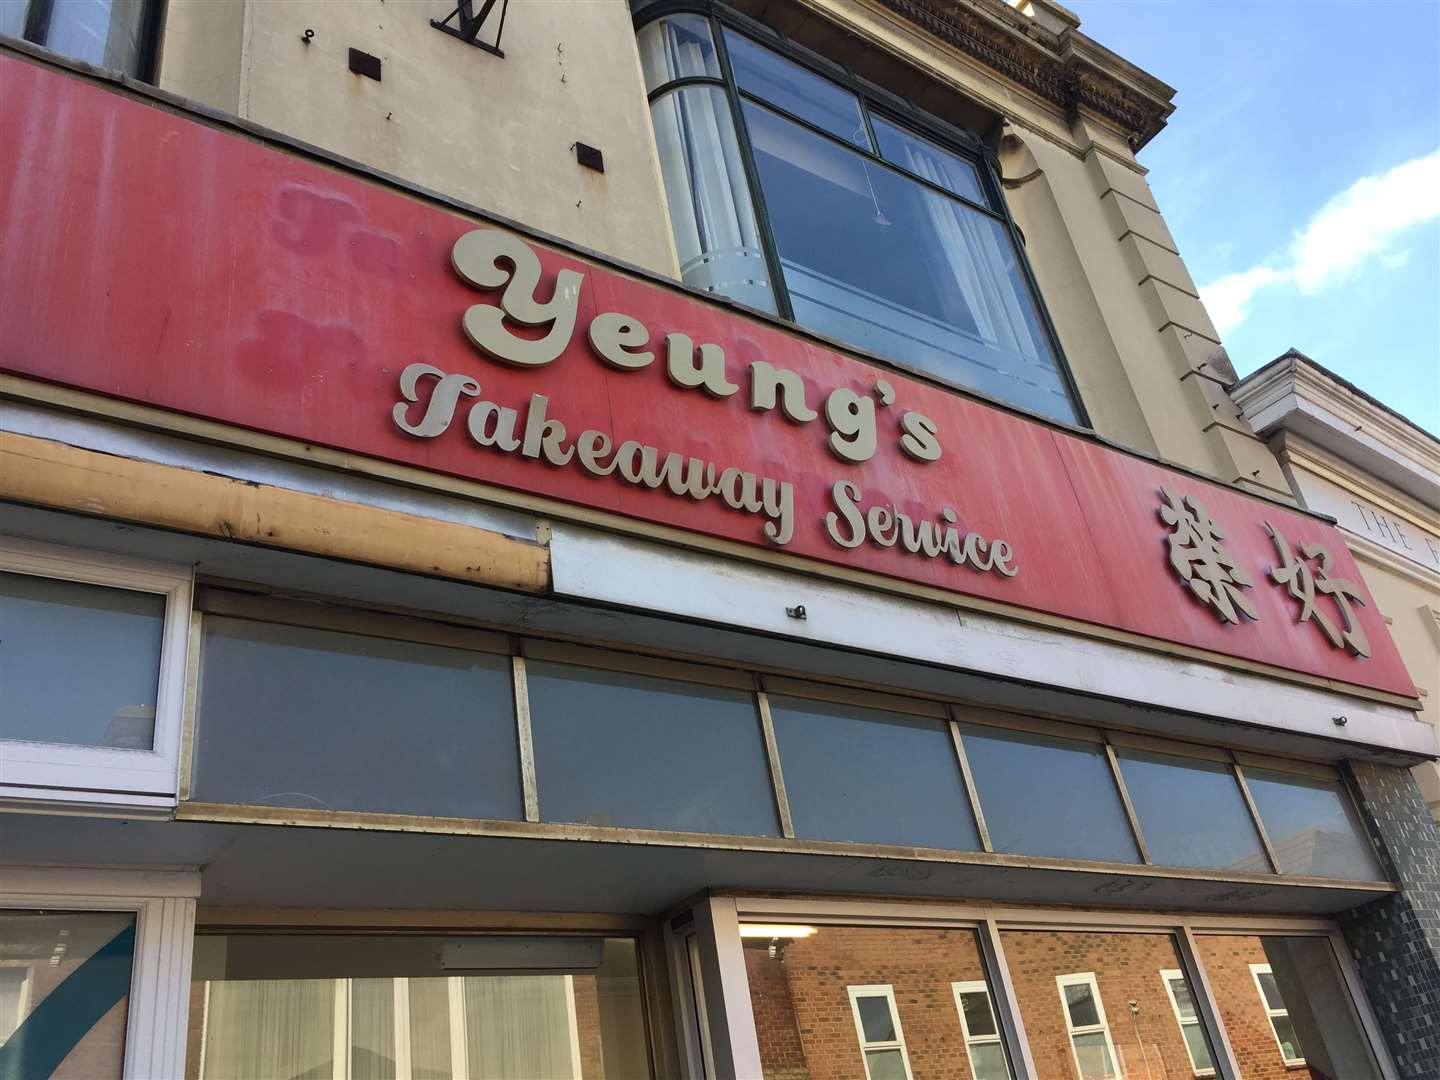 Yeung’s Chinese Takeaway in Preston Street, Faversham